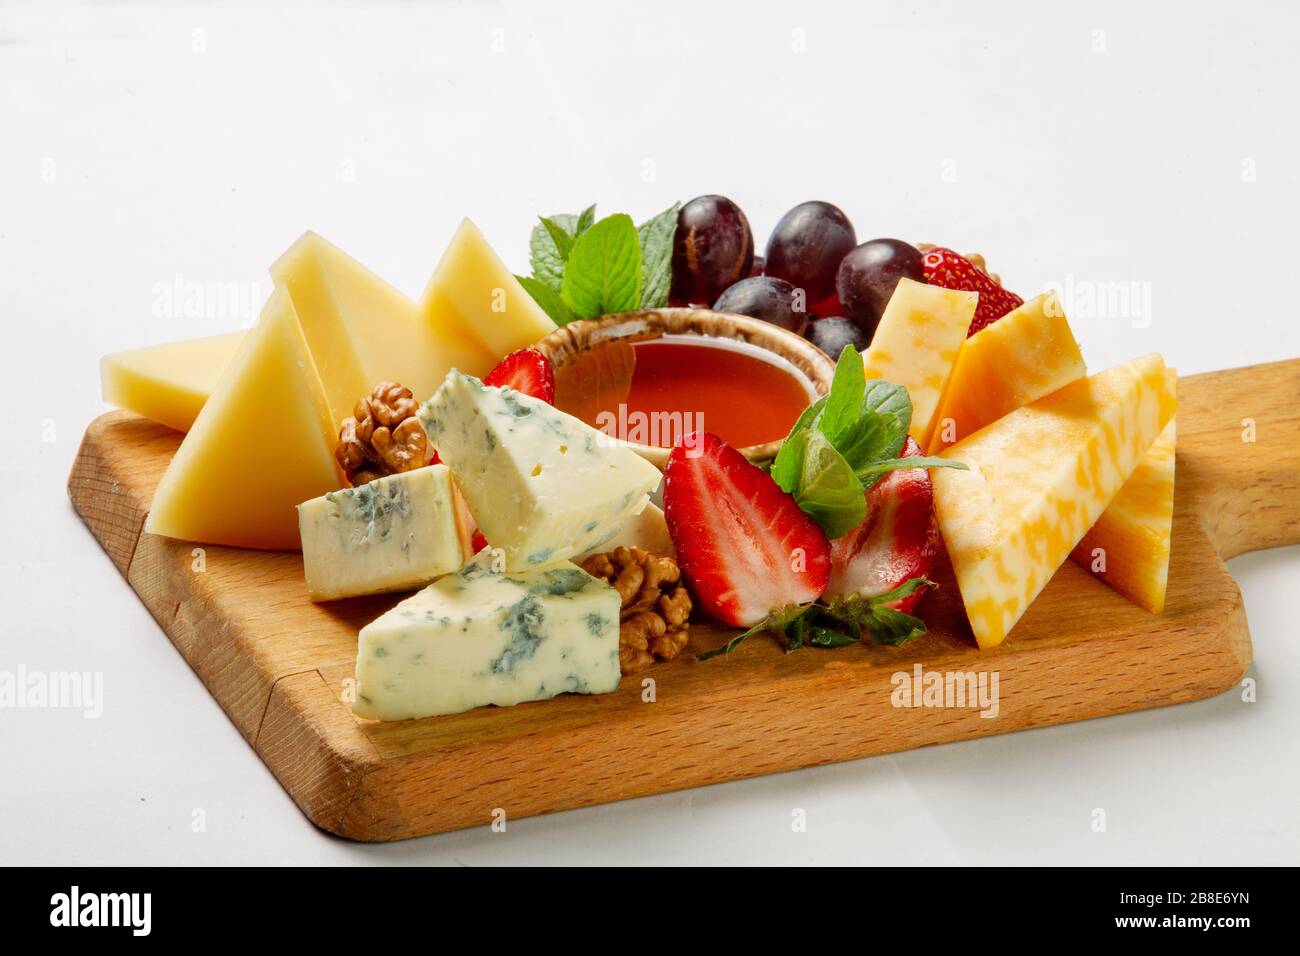 Zu den verschiedenen Käsesorten und Früchten auf dem Holztisch gehören Blaukäse und gepresster, ungekochter Käse sowie Honig und Walnüsse Stockfoto